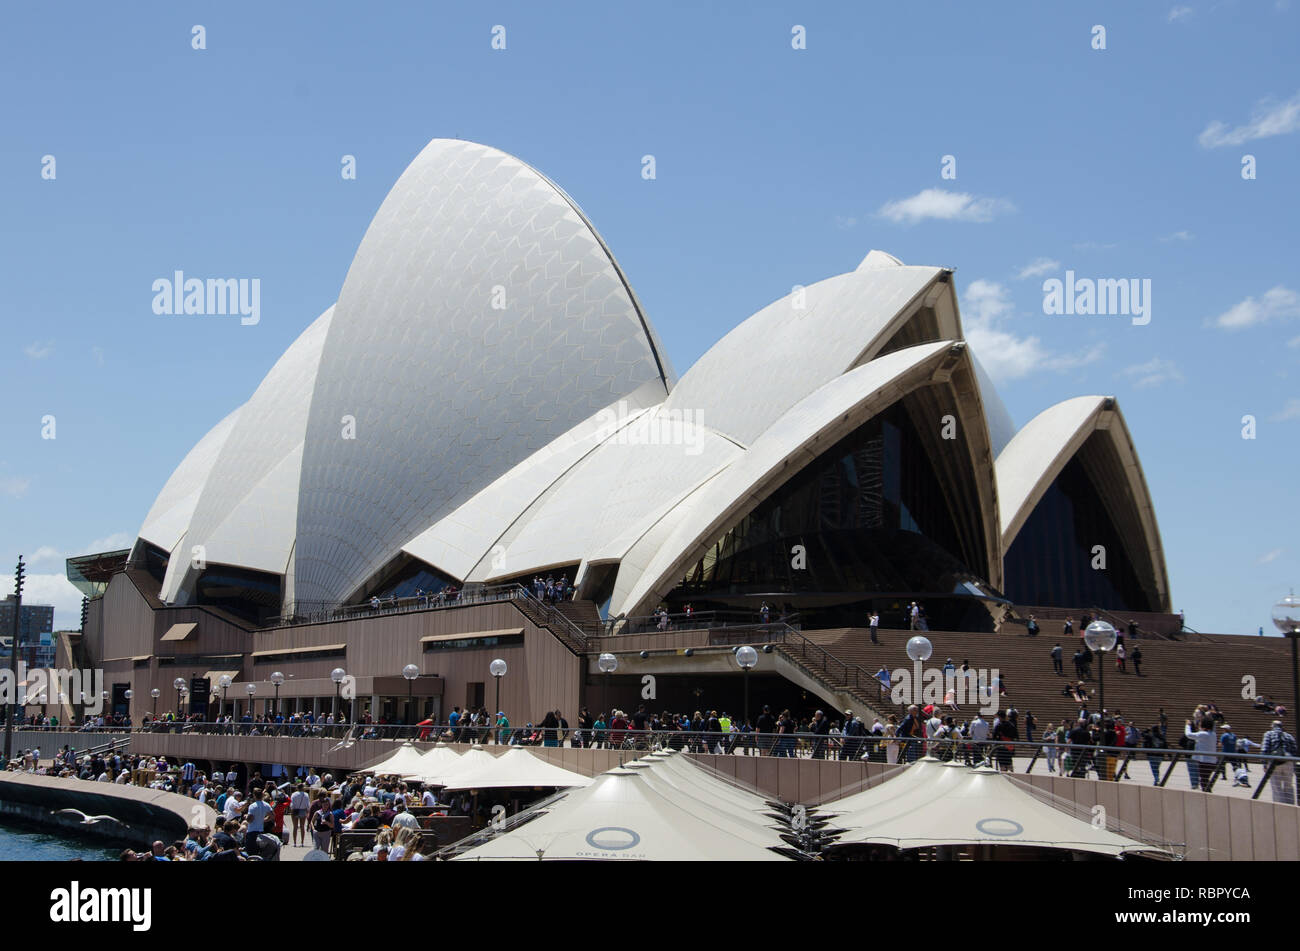 El techo de la icónica Opera House de Sydney aparece un poco distorsionada en esta vista desde el otro lado del puerto Foto de stock